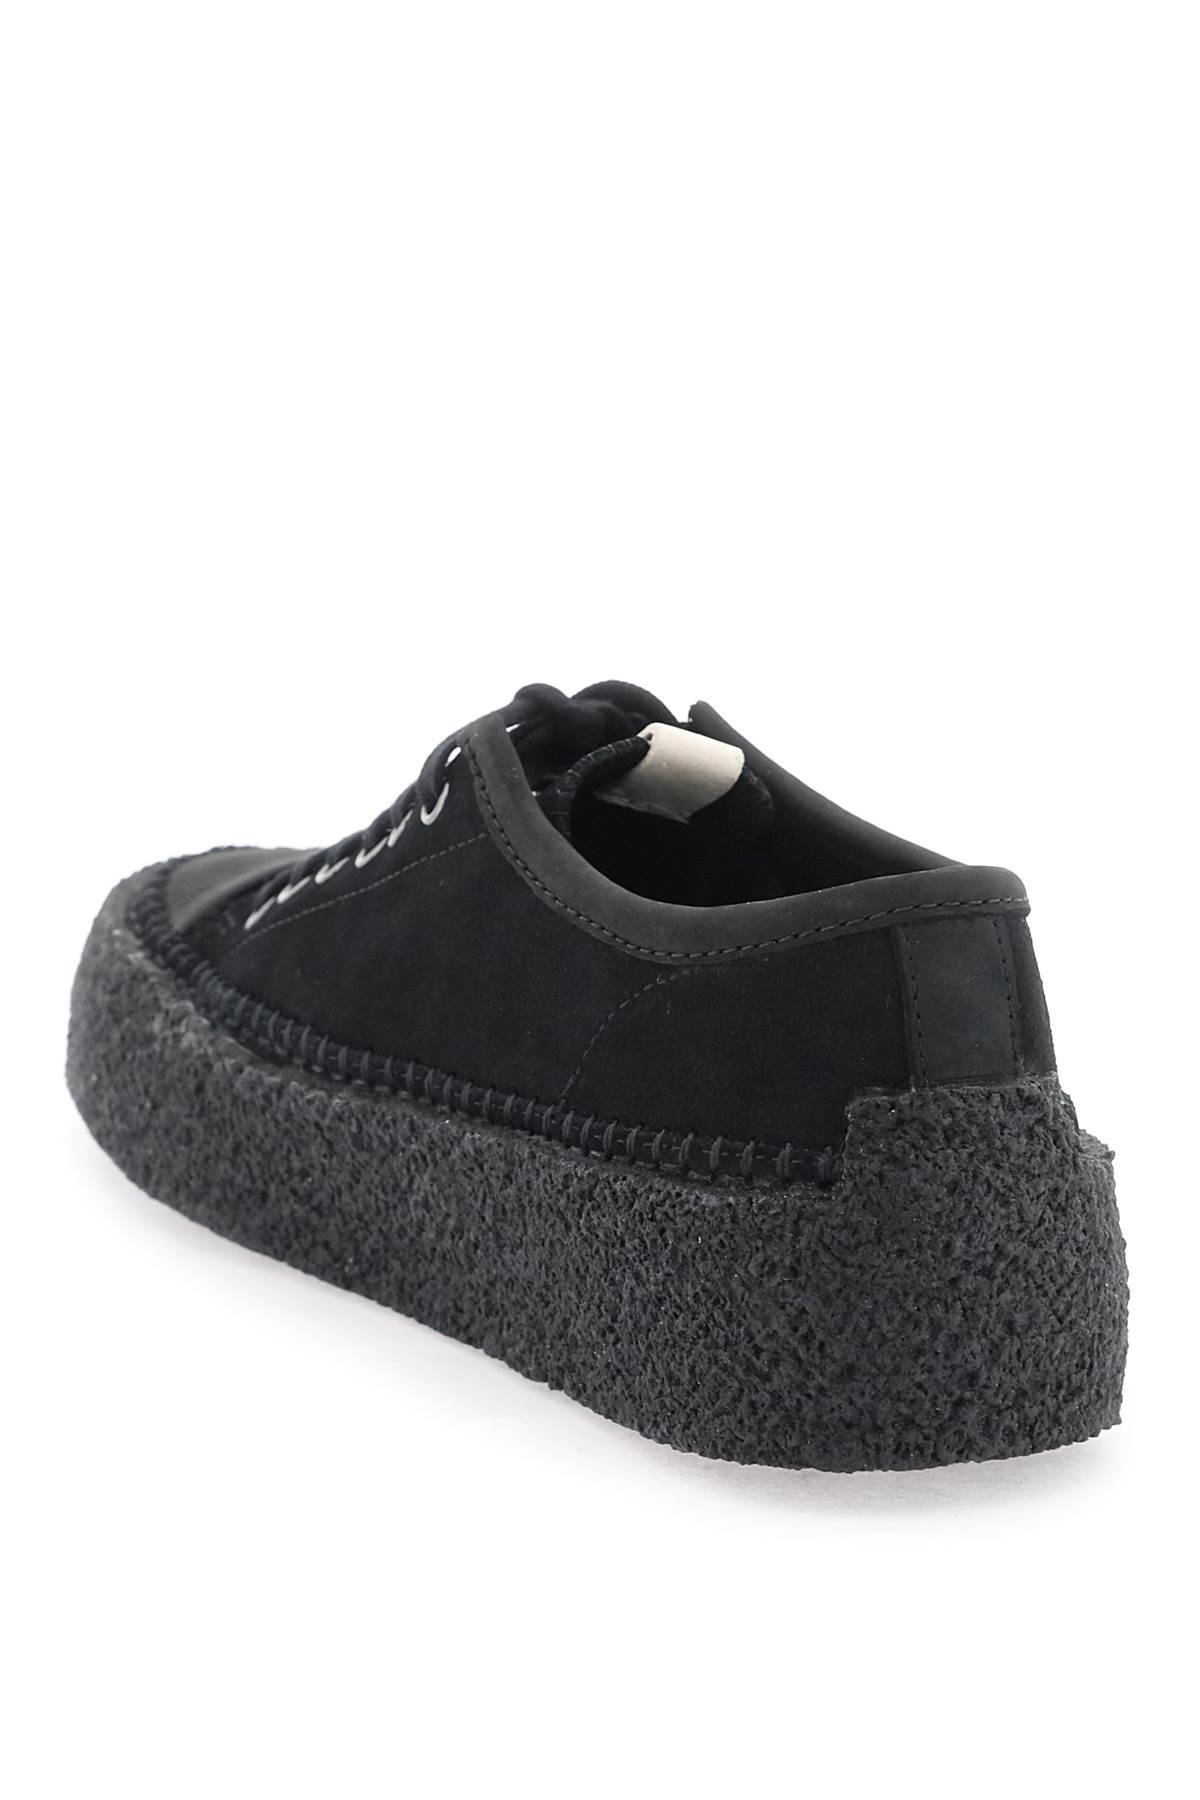 Shop Clarks Suede Leather Caravan Sneakers In Black (black)